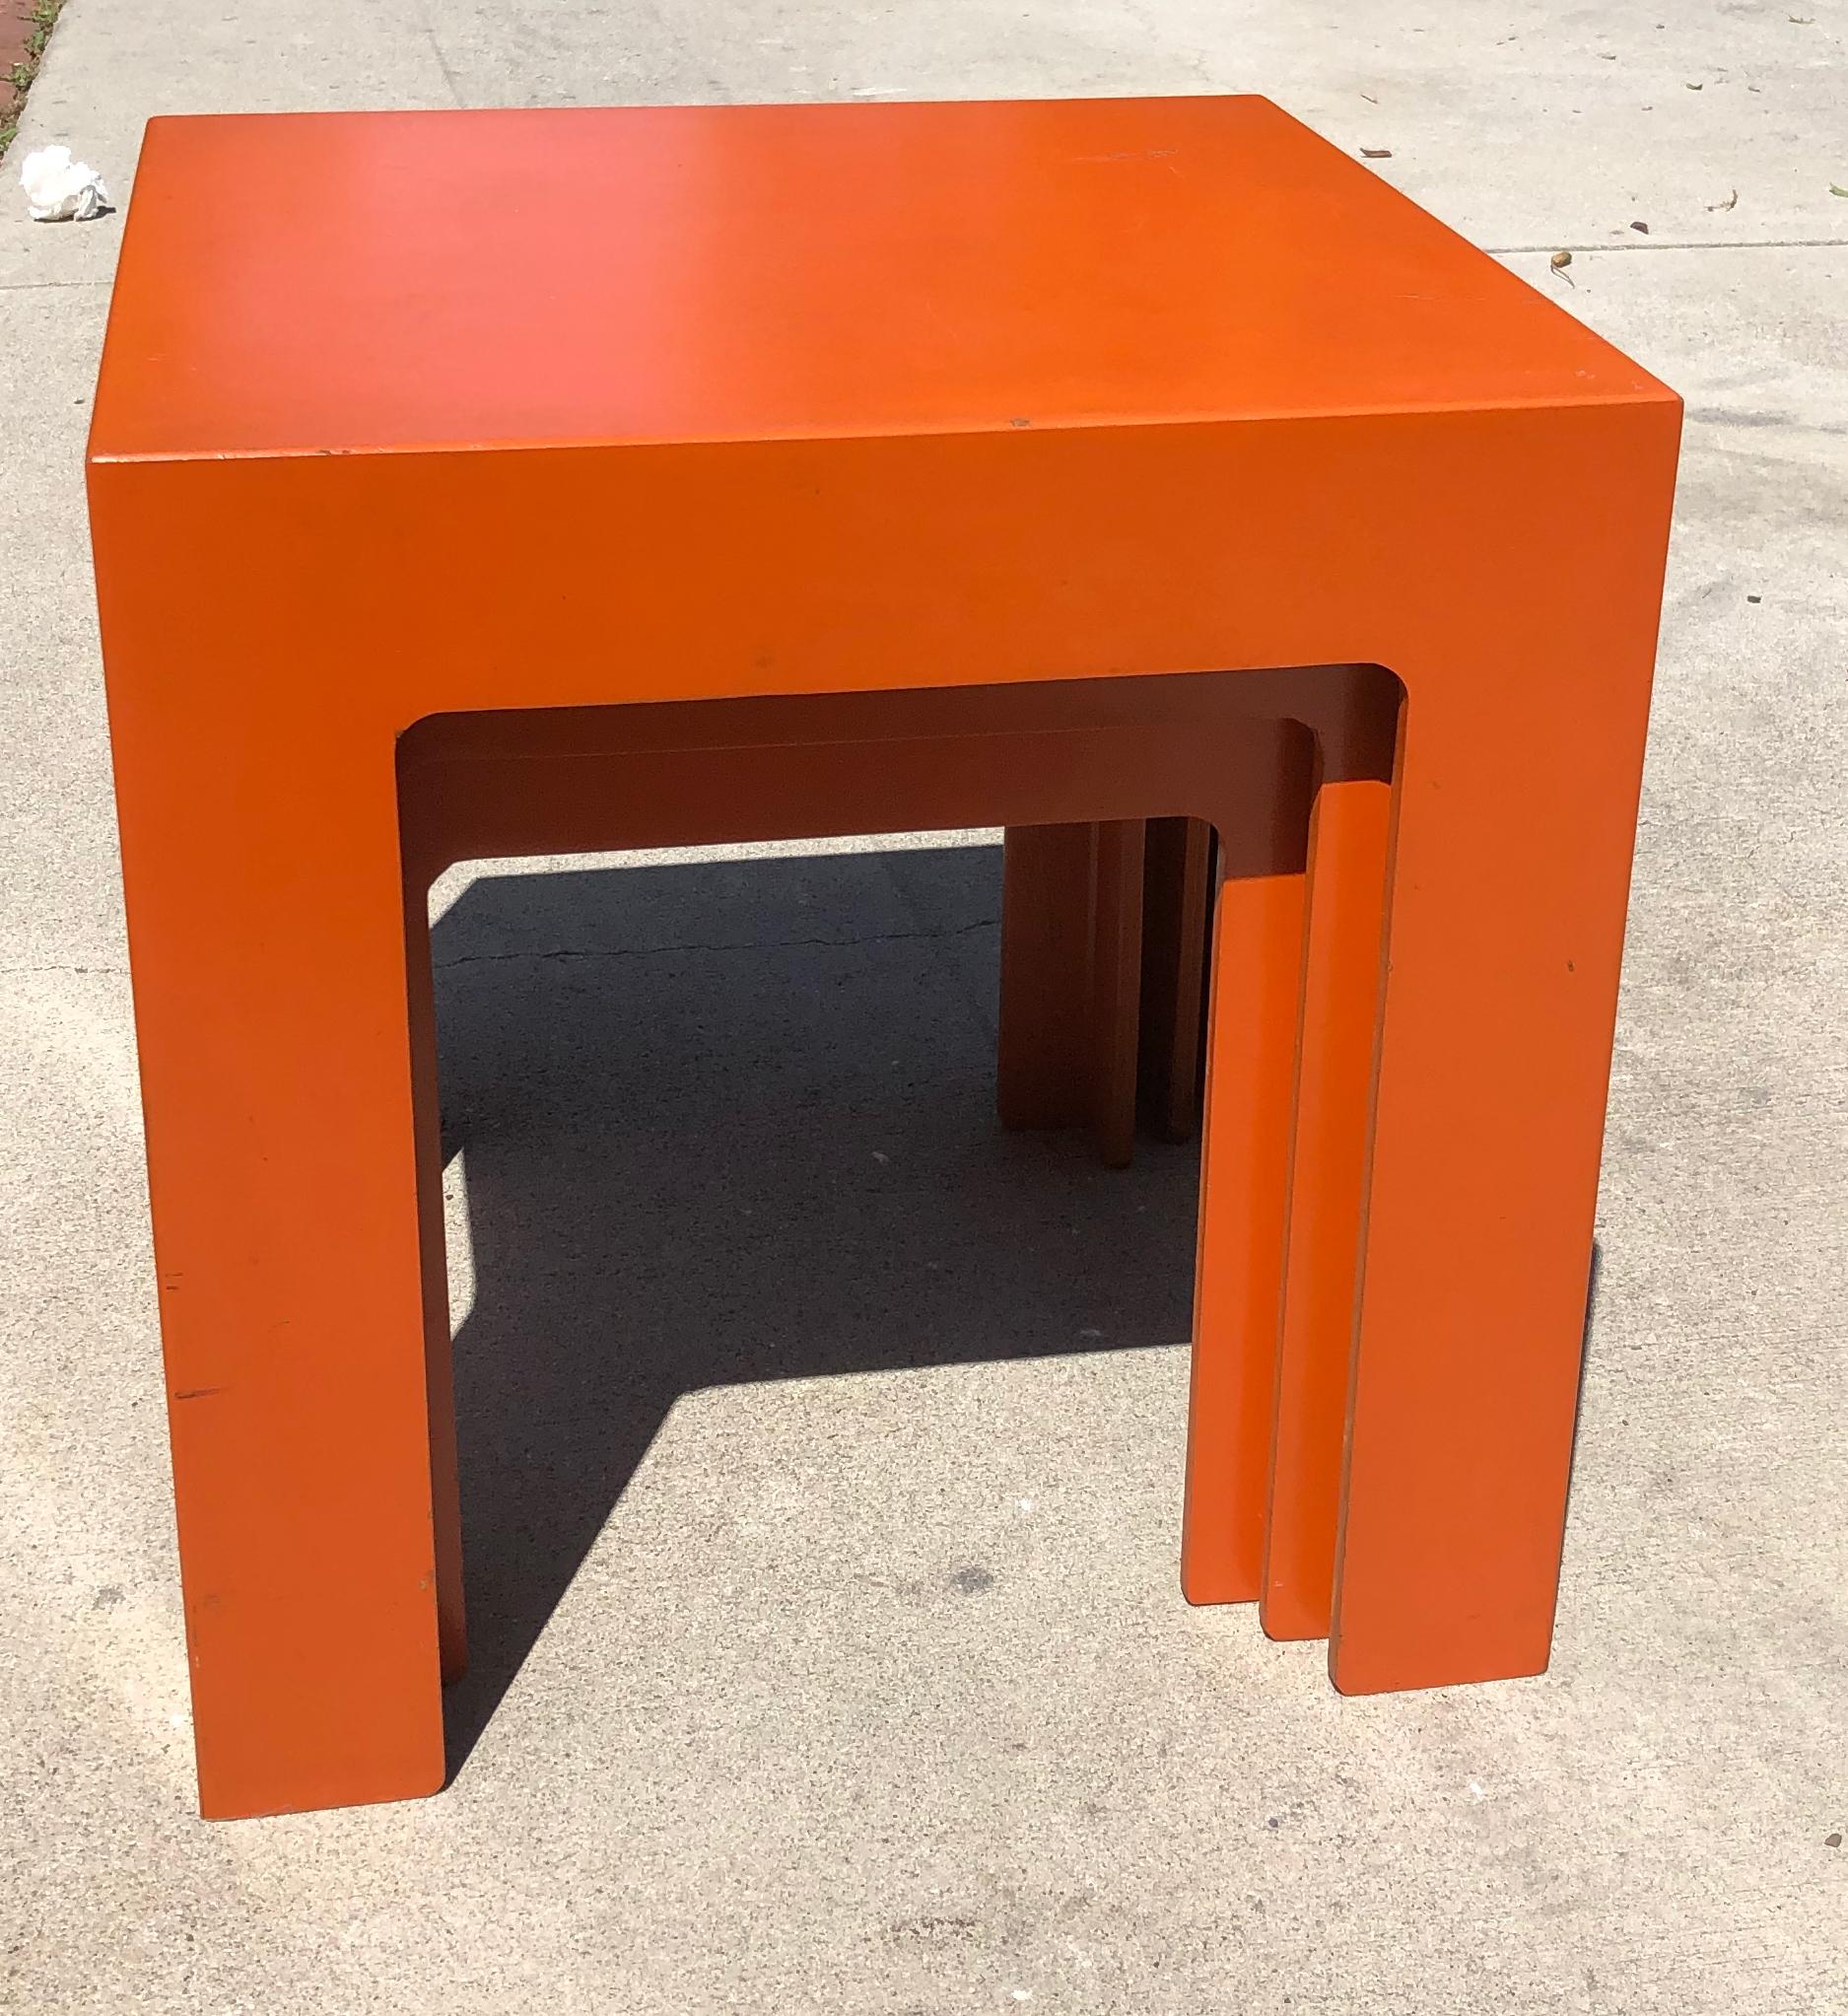 Incroyable Tables Parsons empilables en stratifié orange des années 1960
Chic, unique, vibrant et magnifiquement proportionné. De la même manière  appelant empilés ou côte à côte ;  une pièce intemporelle et introuvable sur le marché. L'ensemble est